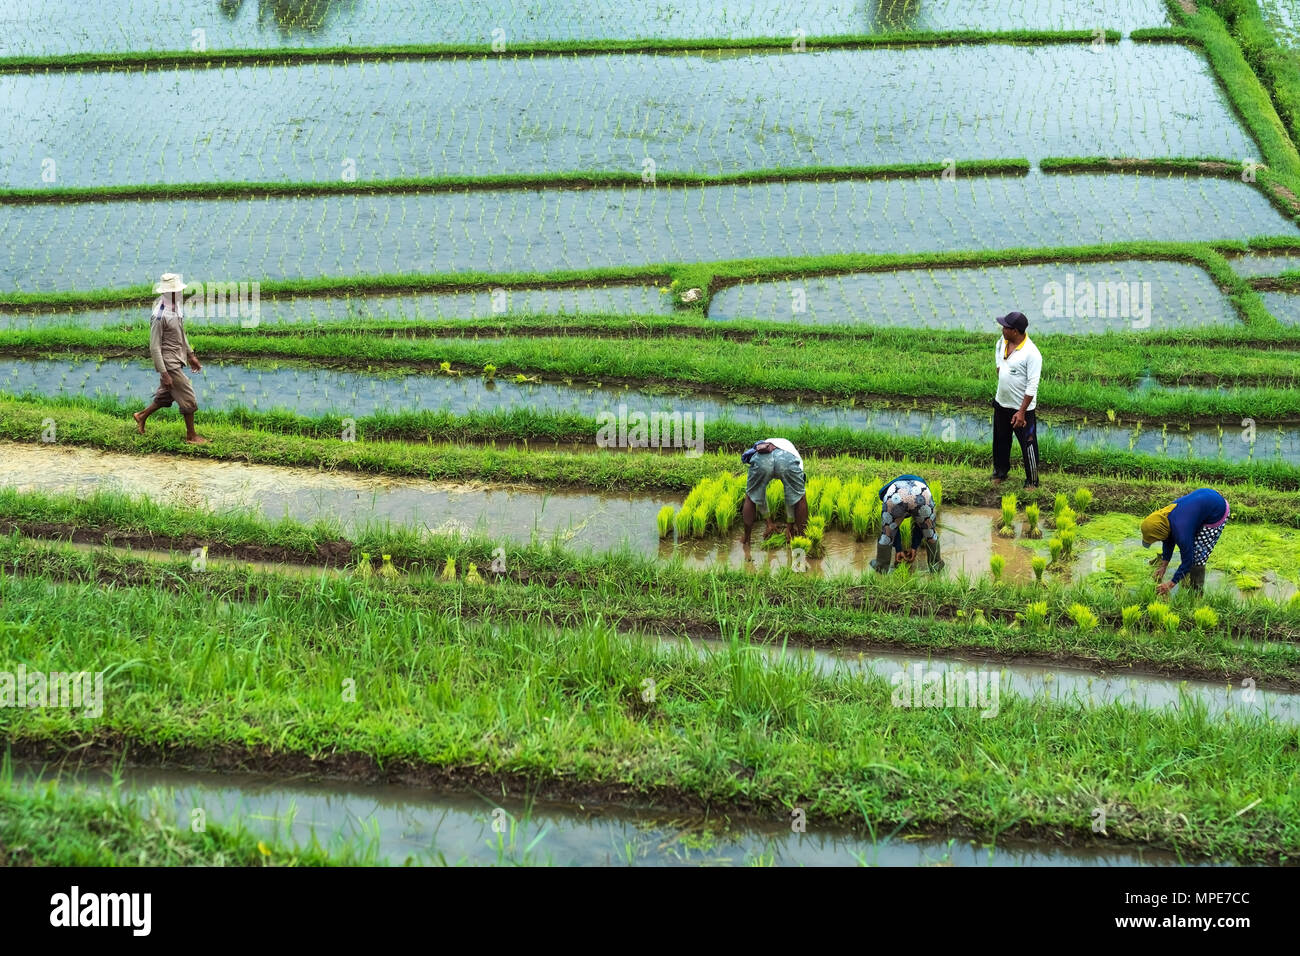 Bali, Indonesien, 12. Januar 2018 - Reis Plantage mit der arbeitenden Bevölkerung. Stockfoto